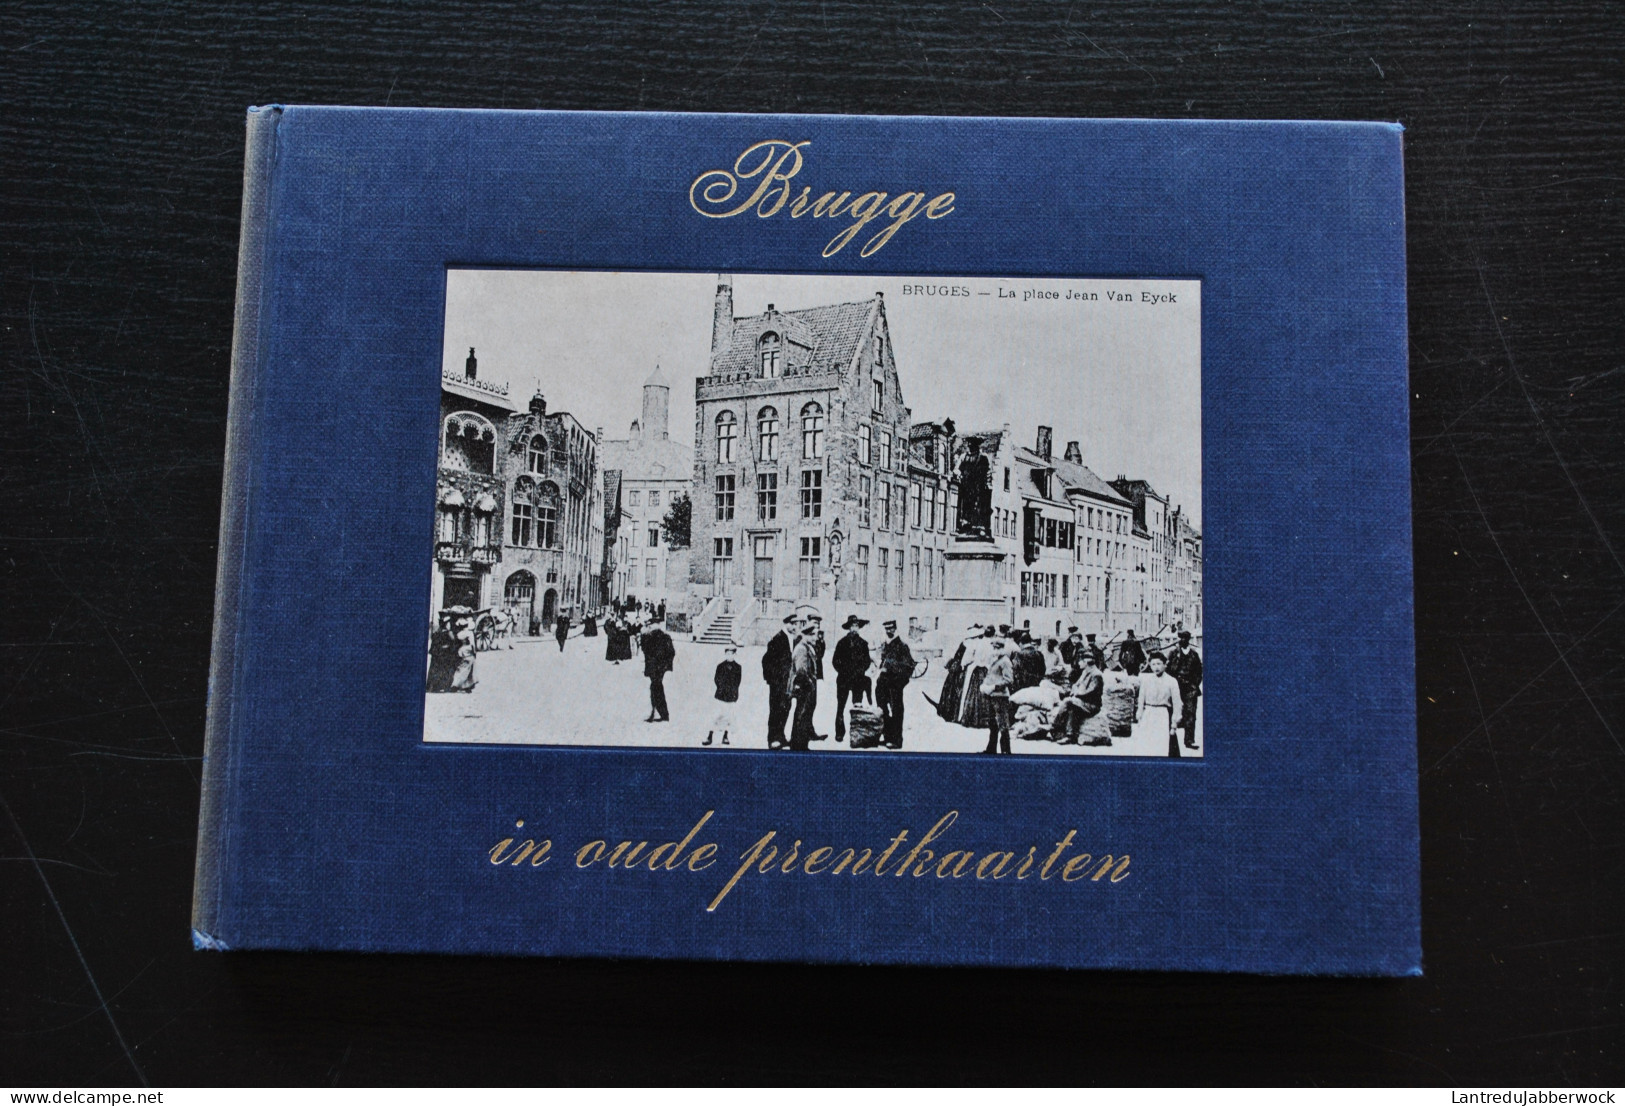 BRUGGE In Oude Prentkaarten Régionalisme Kruispoort Dampoort Van Eyckplein 14 18 Oorlog Bruges Cartes Postales Anciennes - België